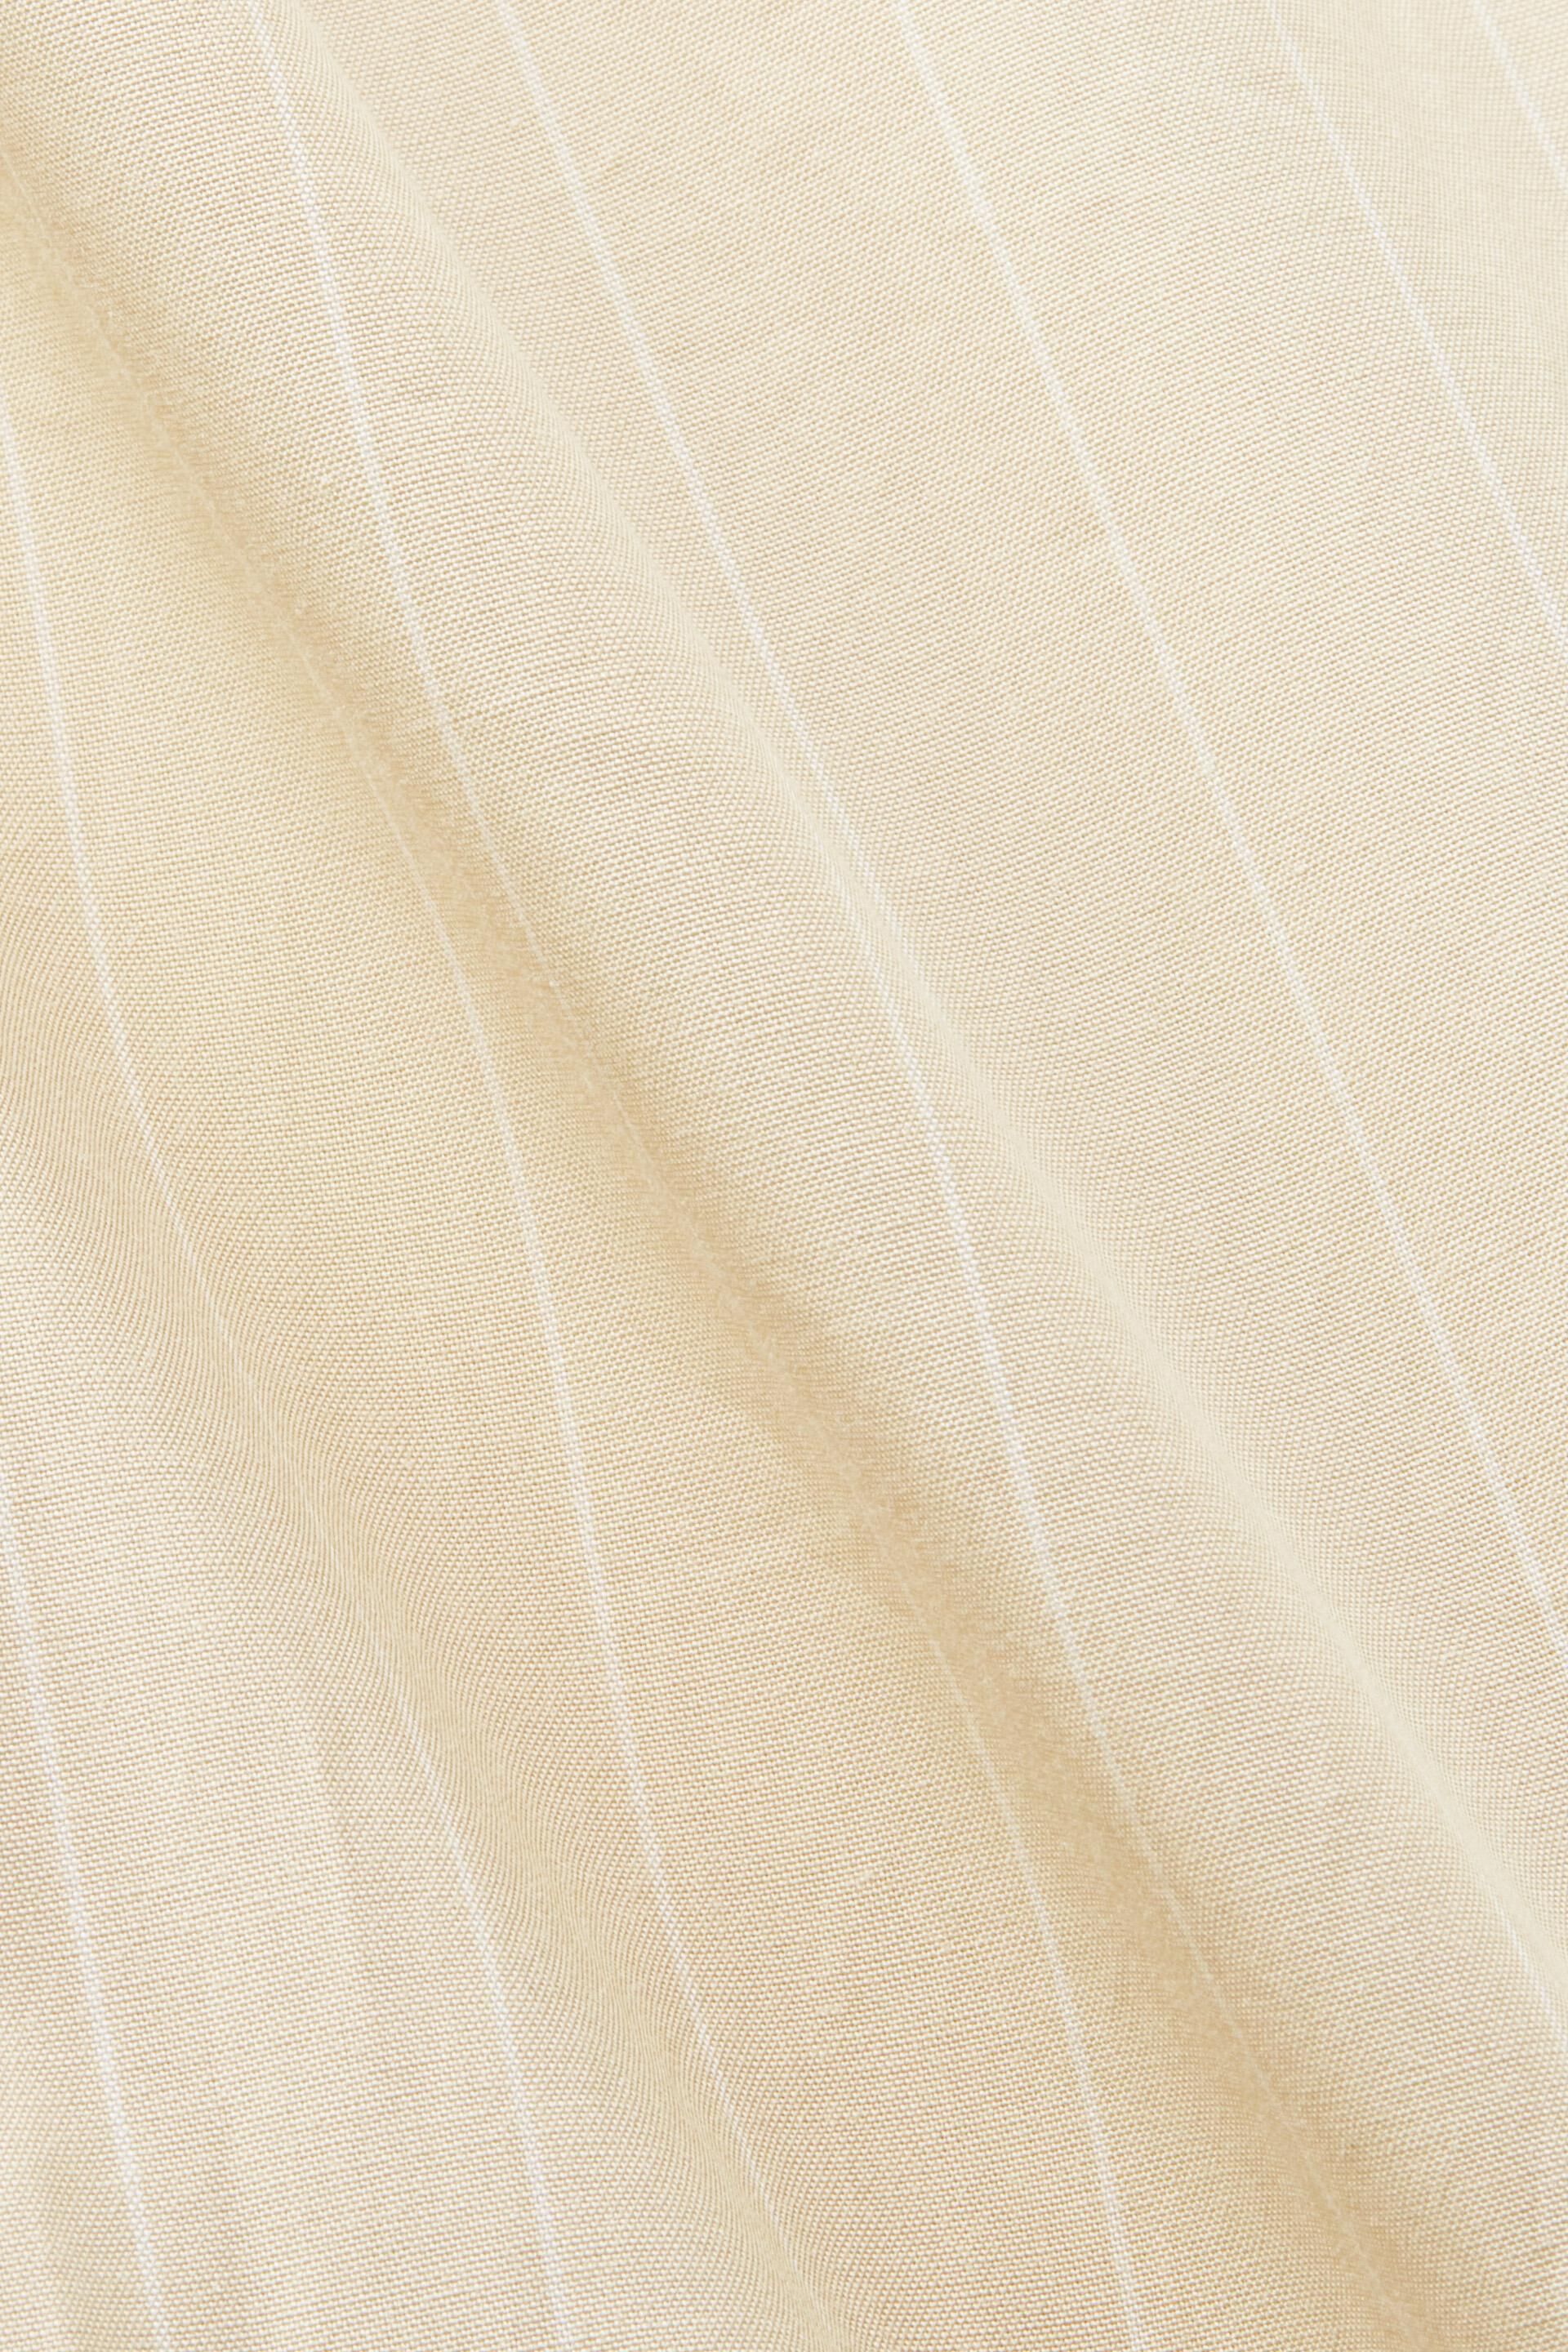 Esprit Damen Hemdblusenkleid mit Nadelstreifen, Baumwolle 100 